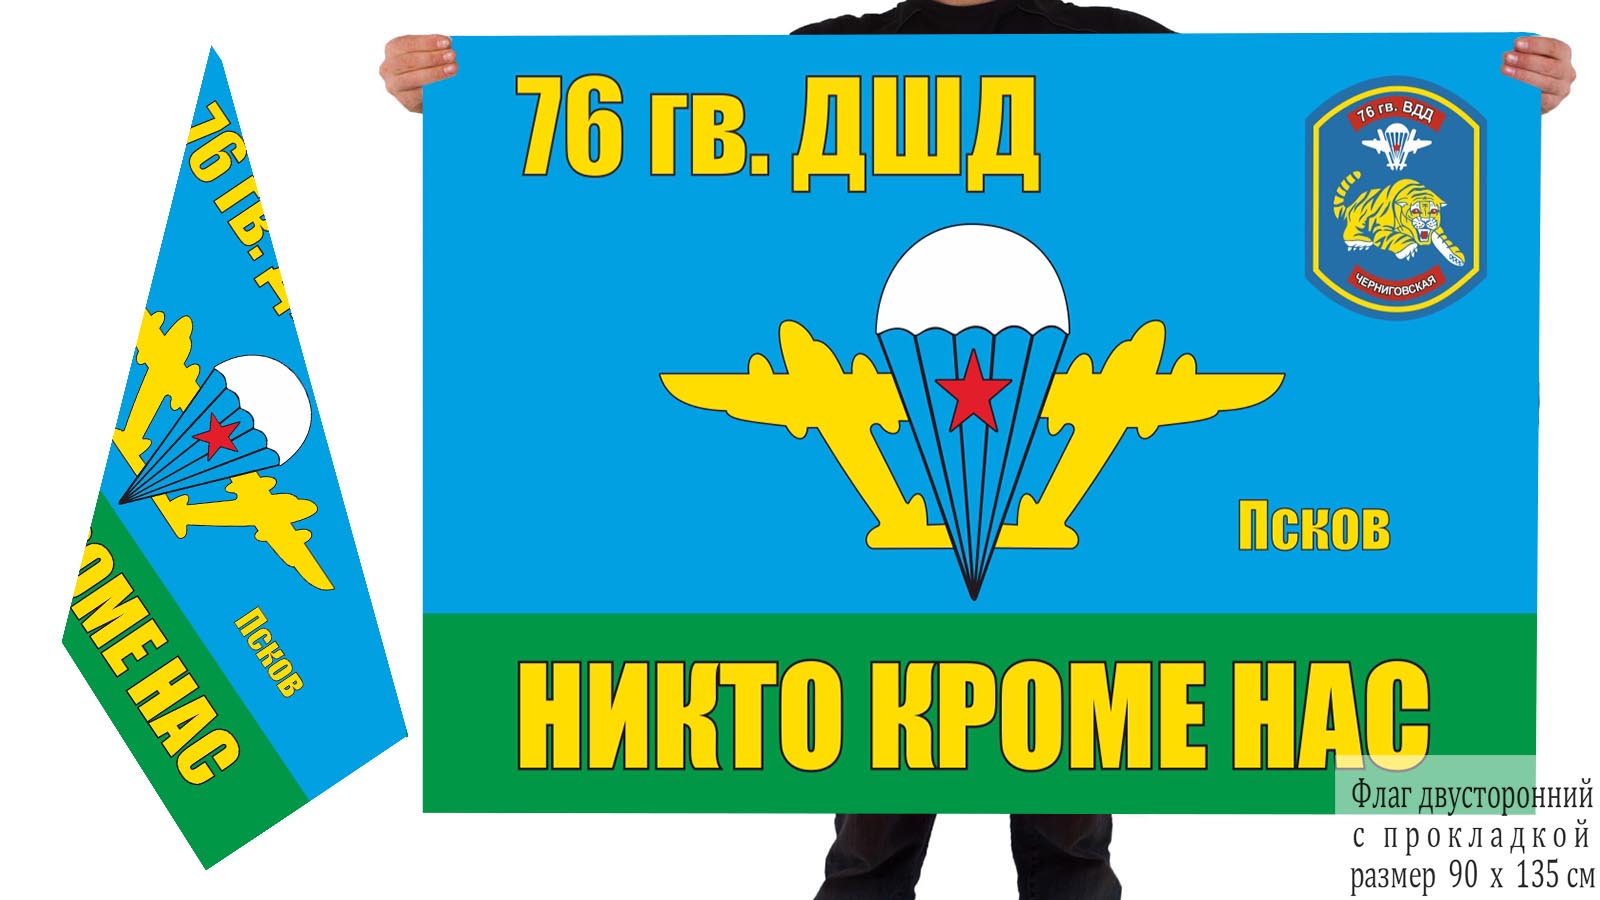 Двусторонний флаг 76 Гв. ДШД